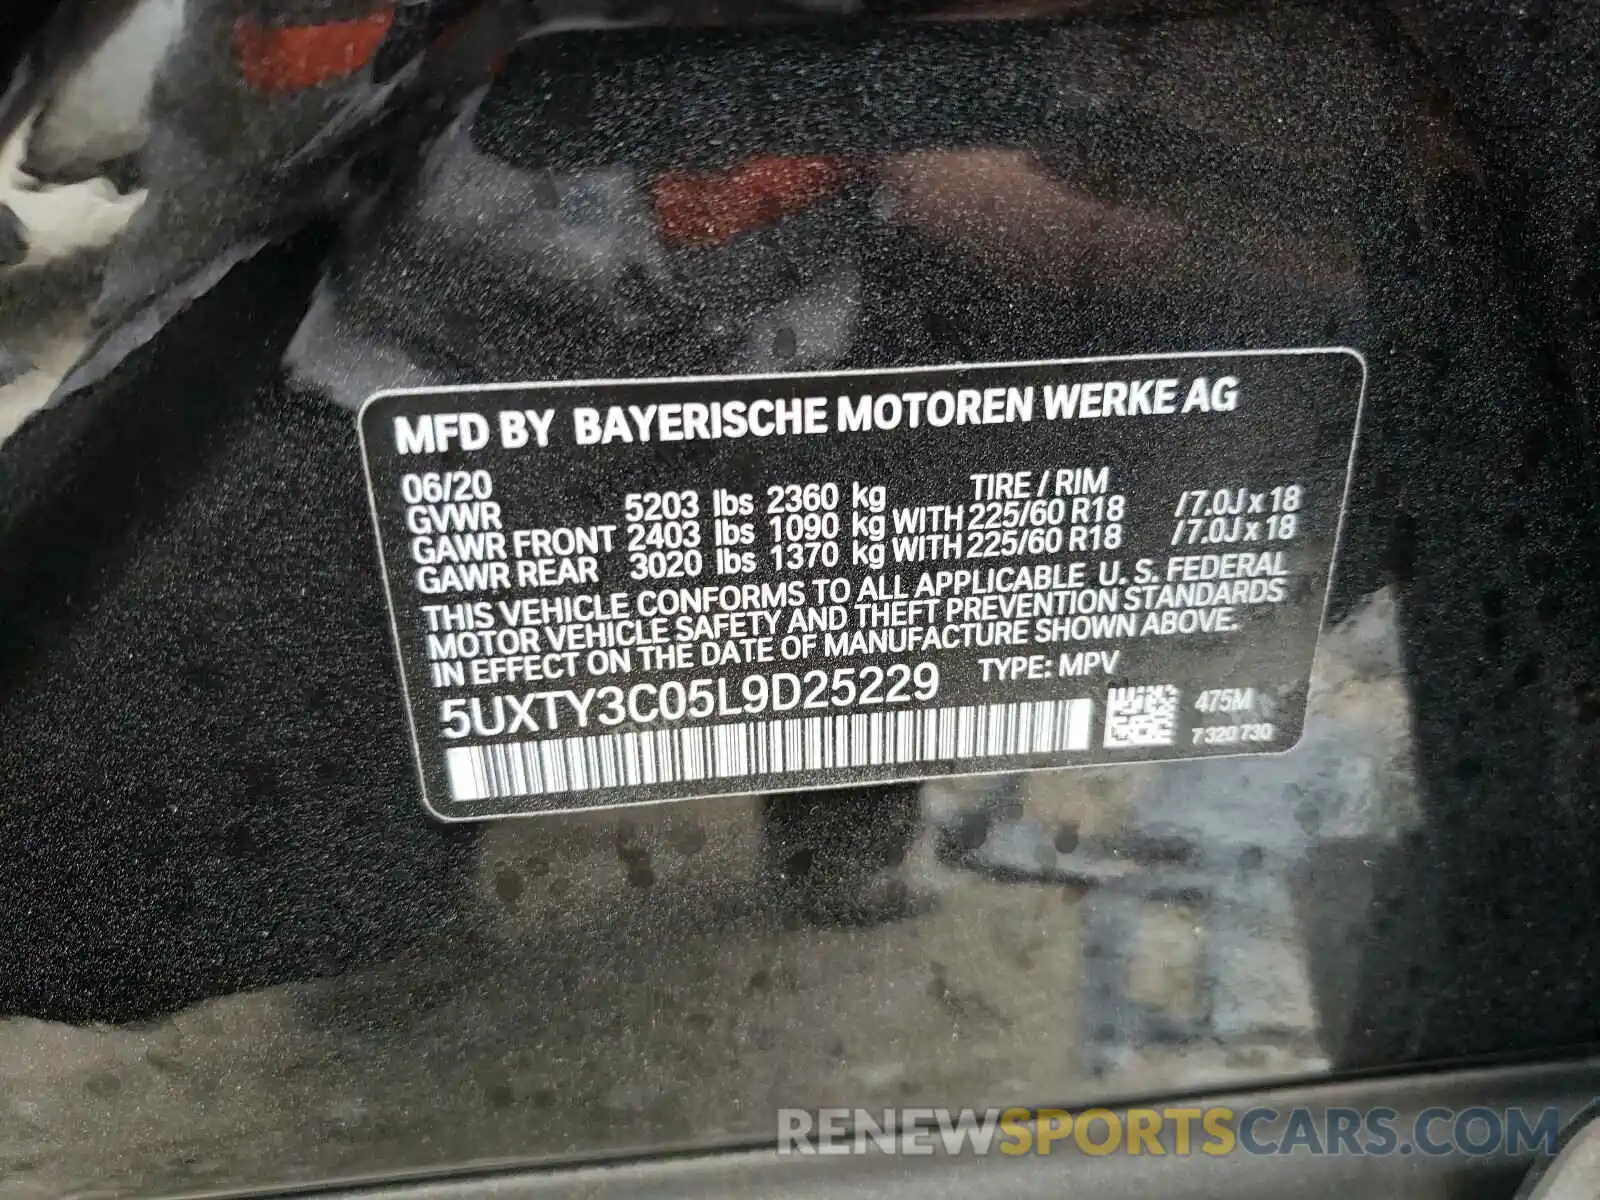 10 Photograph of a damaged car 5UXTY3C05L9D25229 BMW X3 2020